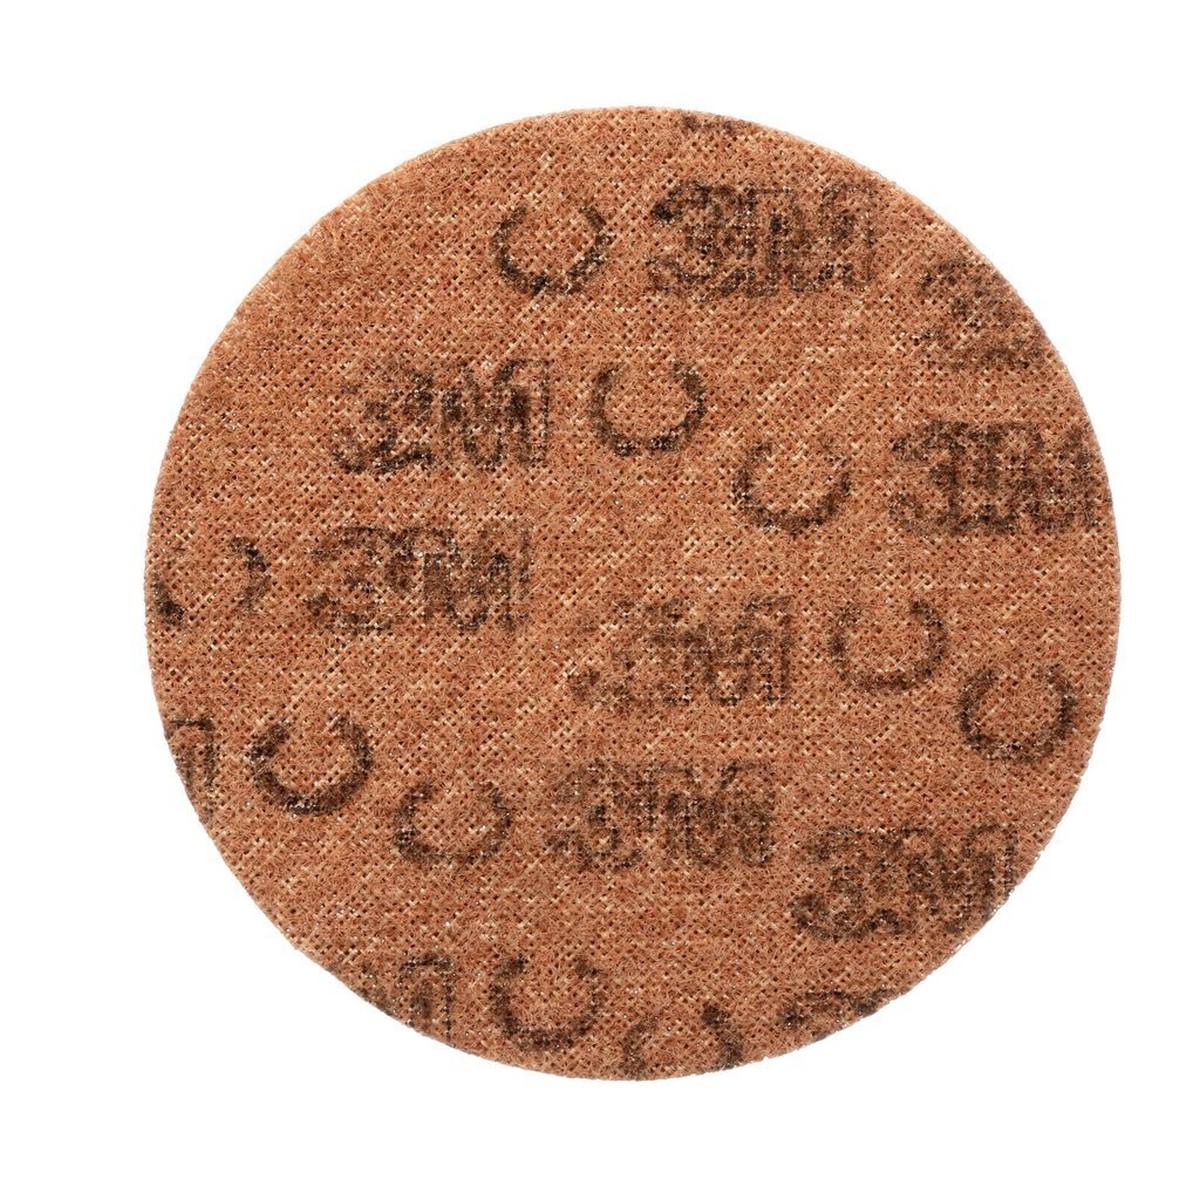 3M Scotch-Brite disco in tessuto non tessuto SC-DH senza centratura, marrone, 178 mm, A, ruvido #05212